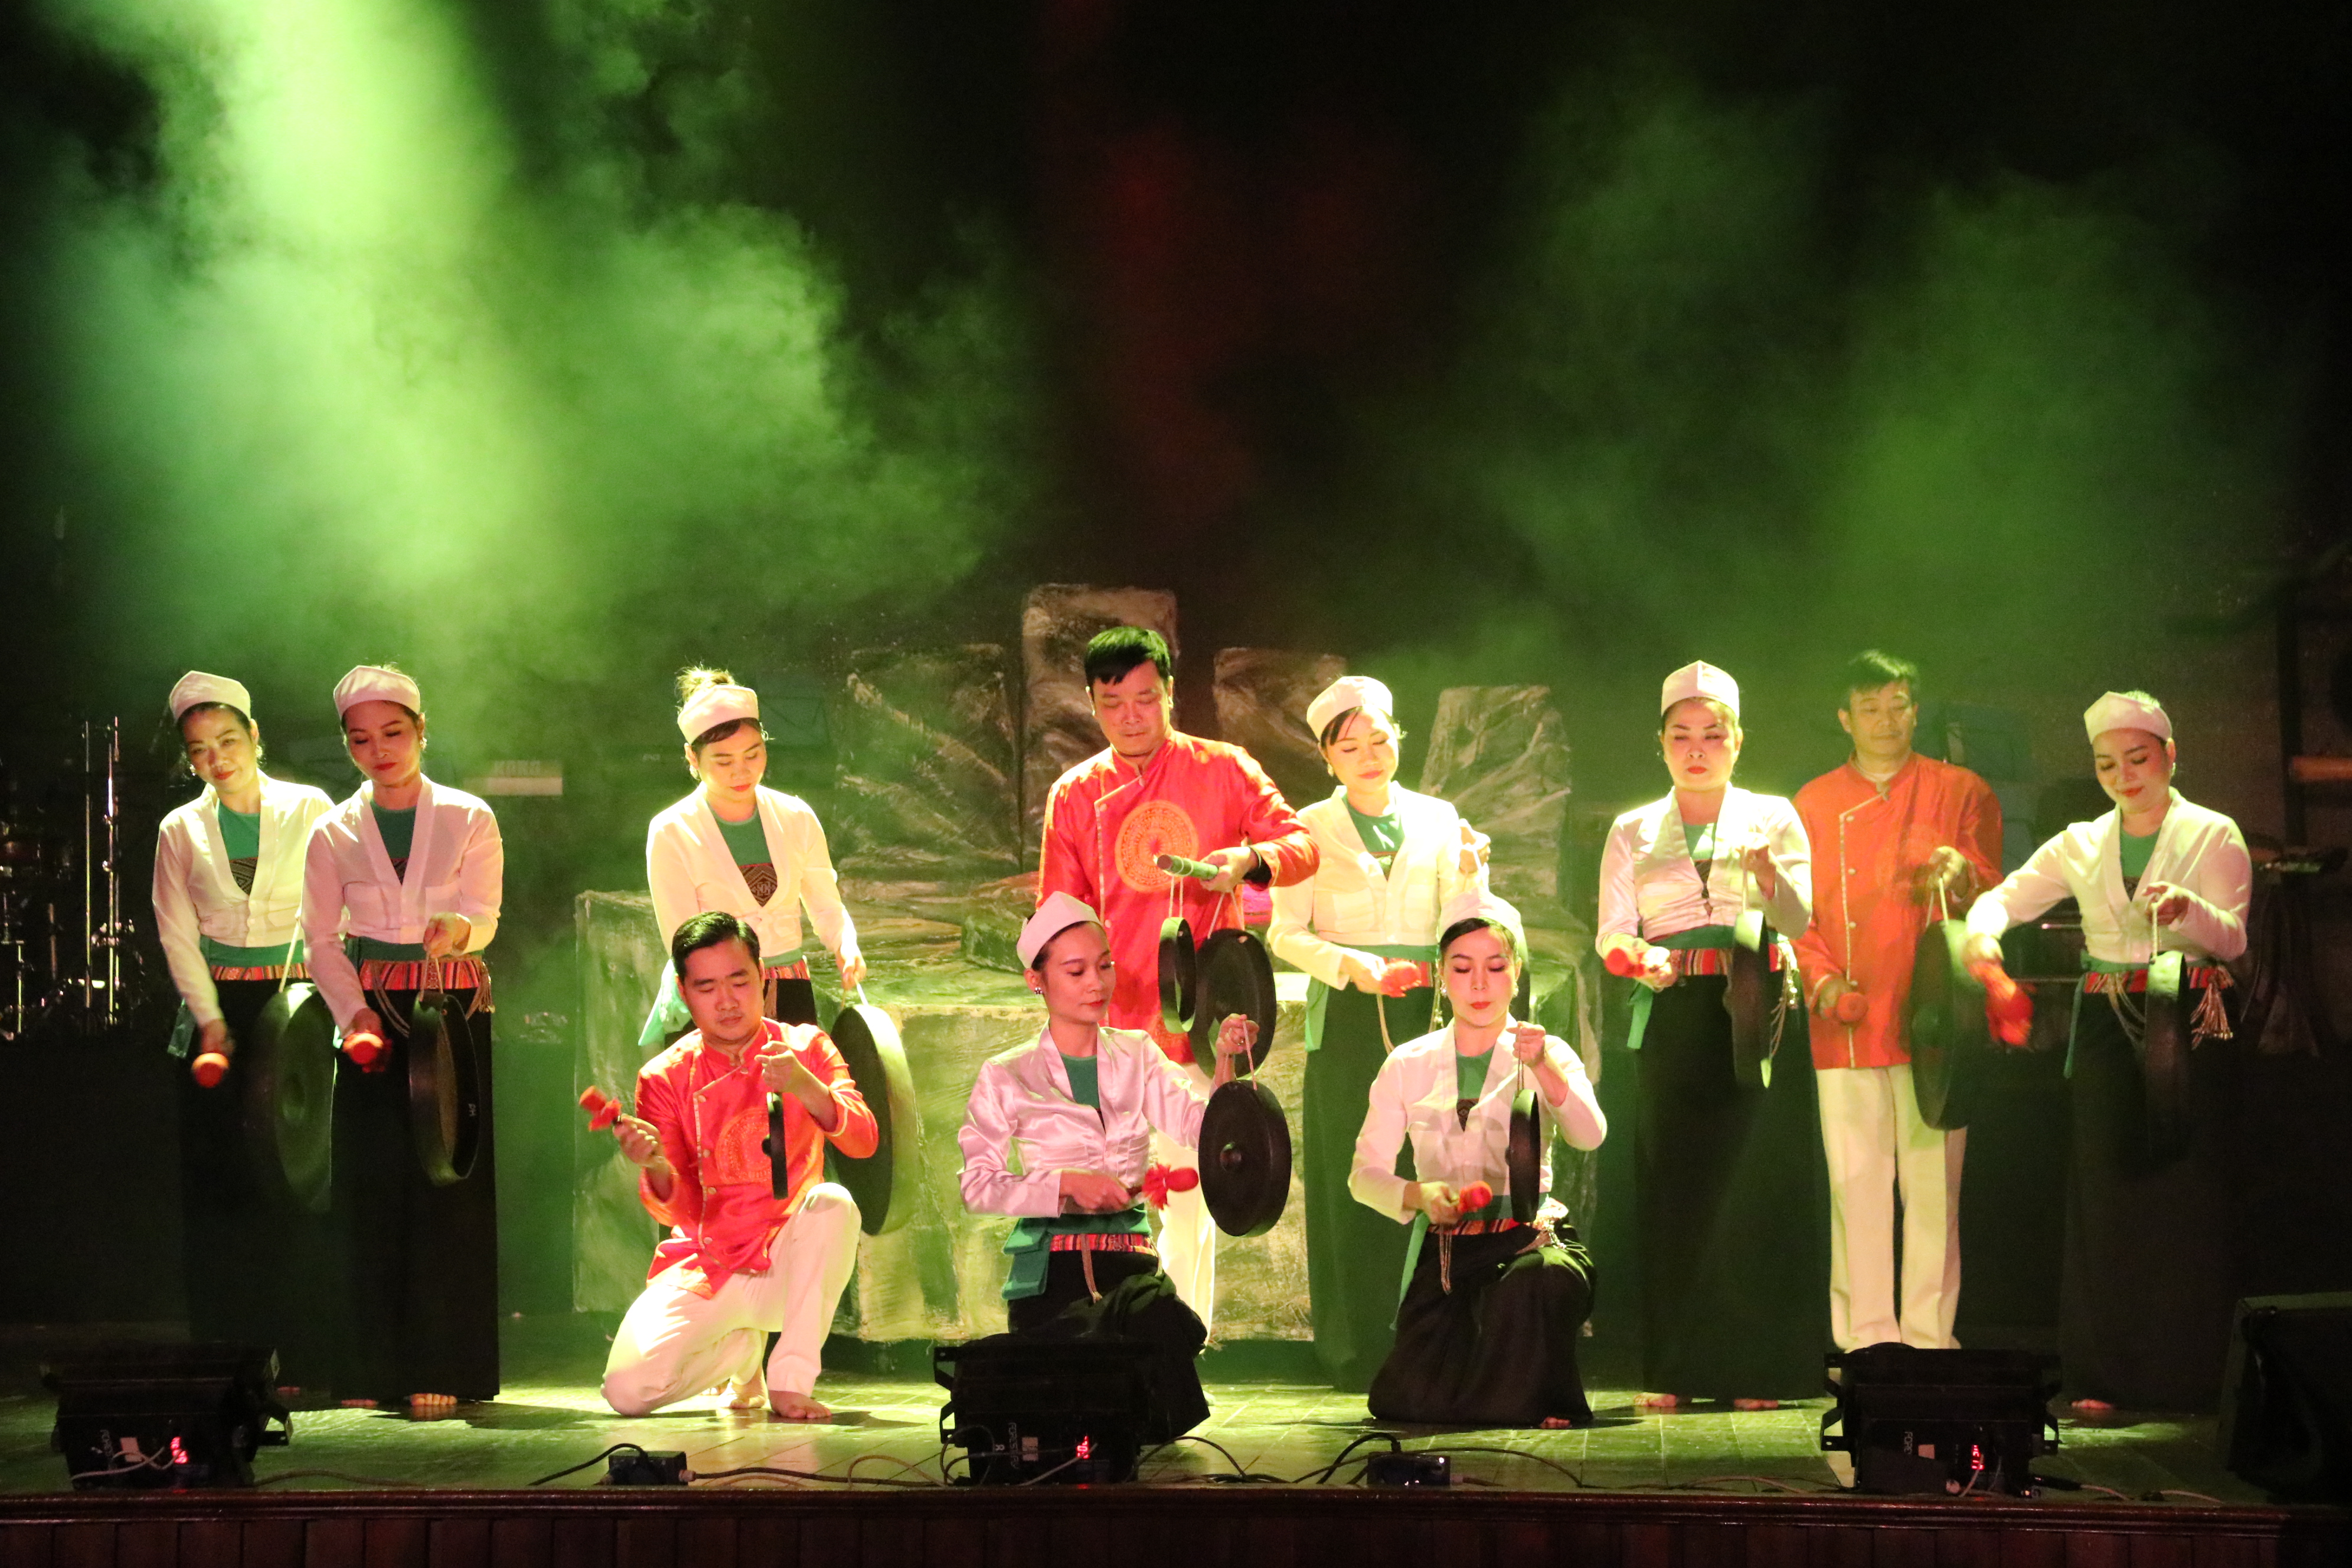 Liên hoan Ca Múa Nhạc toàn quốc - 2021 Những hình ảnh trong chương trình nghệ thuật Bình Thuận lung linh sắc mầu - Nhà hát Ca Múa Nhạc Biển Xanh 26 Tháng Mười Một 2021   /   102 lượt xem